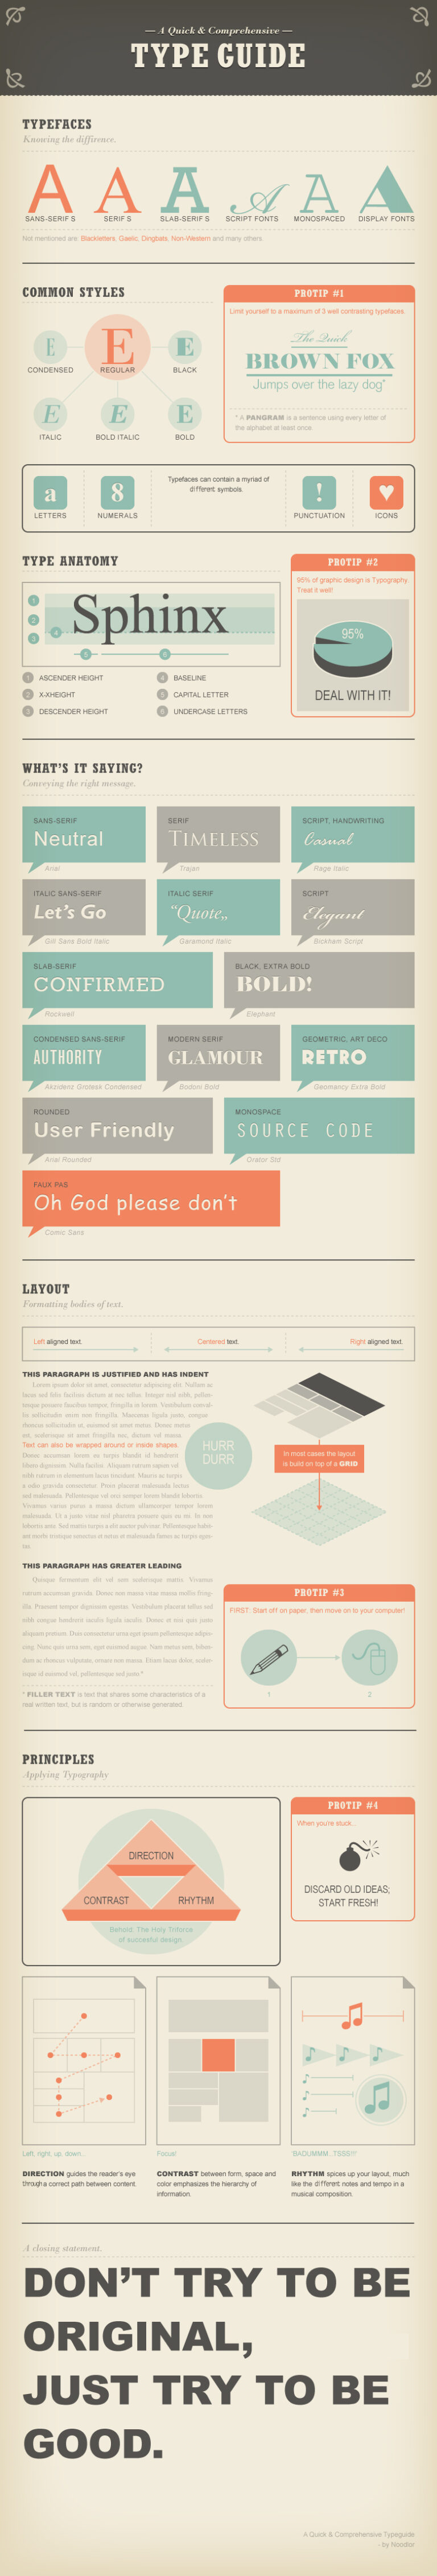 Infographie pour comprendre les typographies